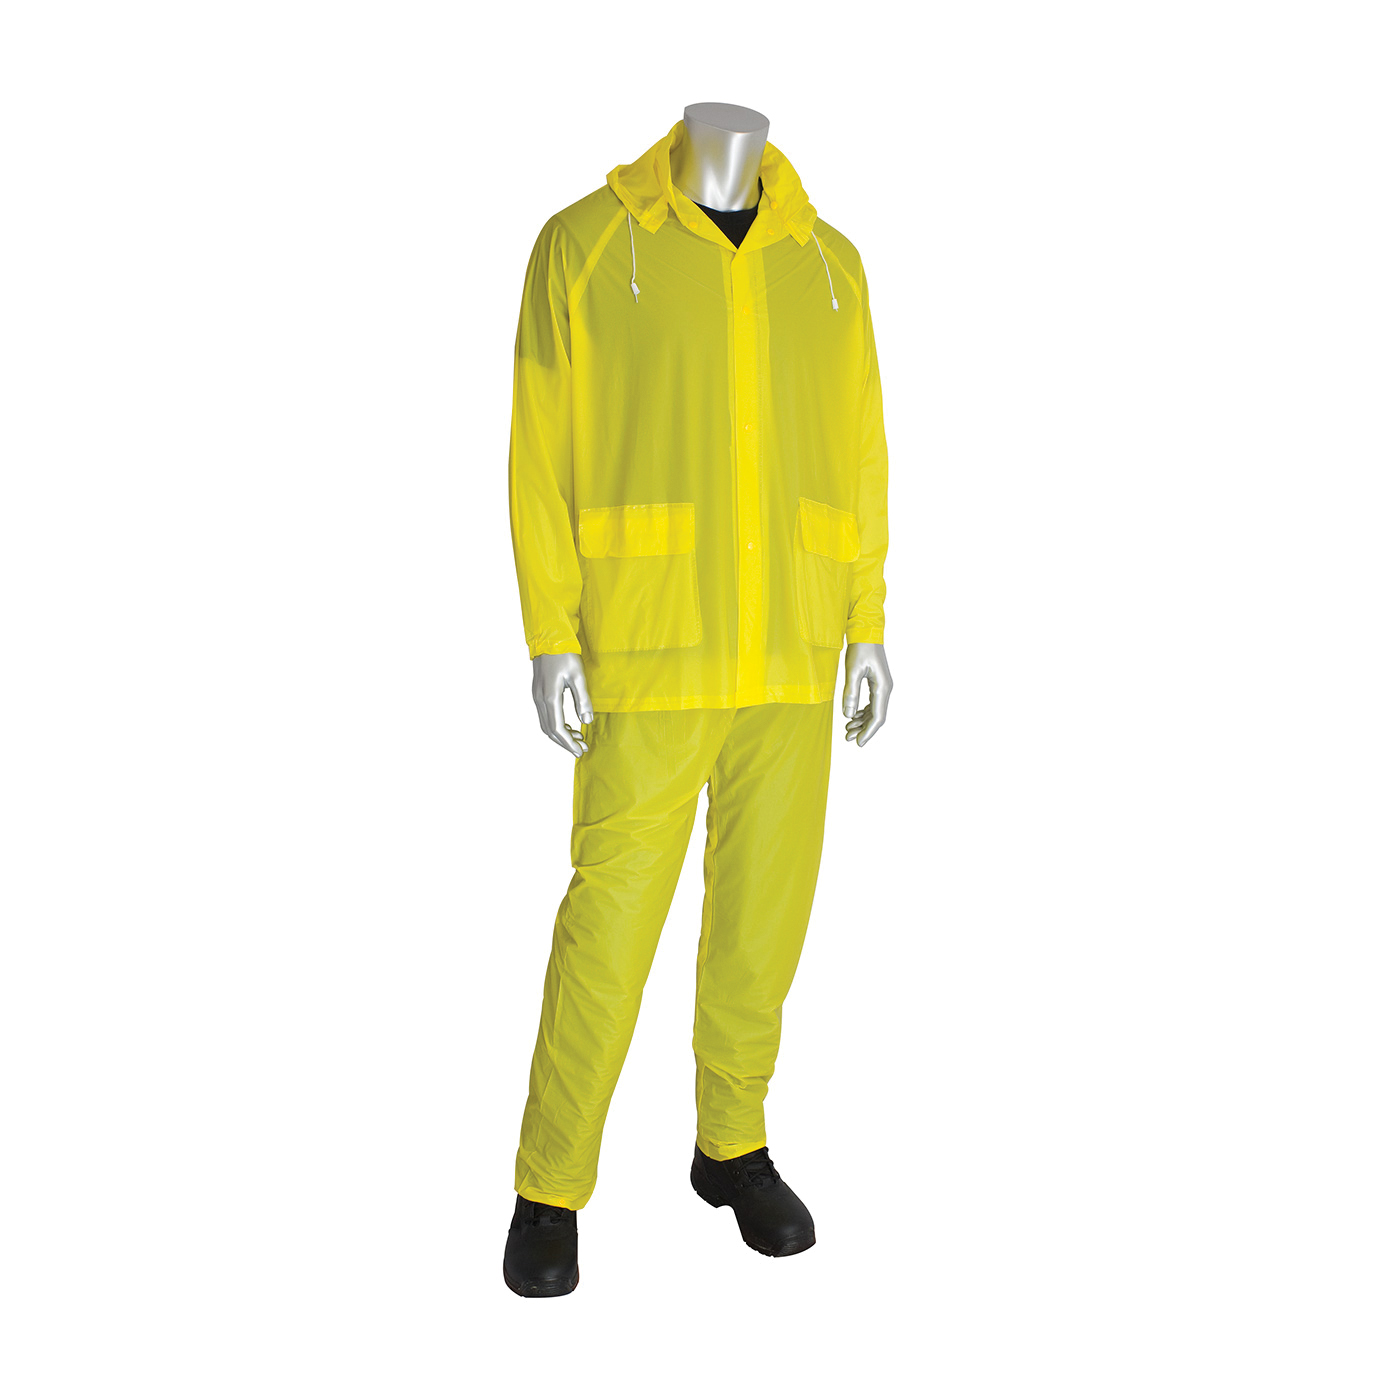 PIP® FALCON™ 201-100X4 3-Piece Waterproof Rainsuit, 4XL, Yellow, PVC, 56 in Waist, 34 in L Inseam, Detachable Hood